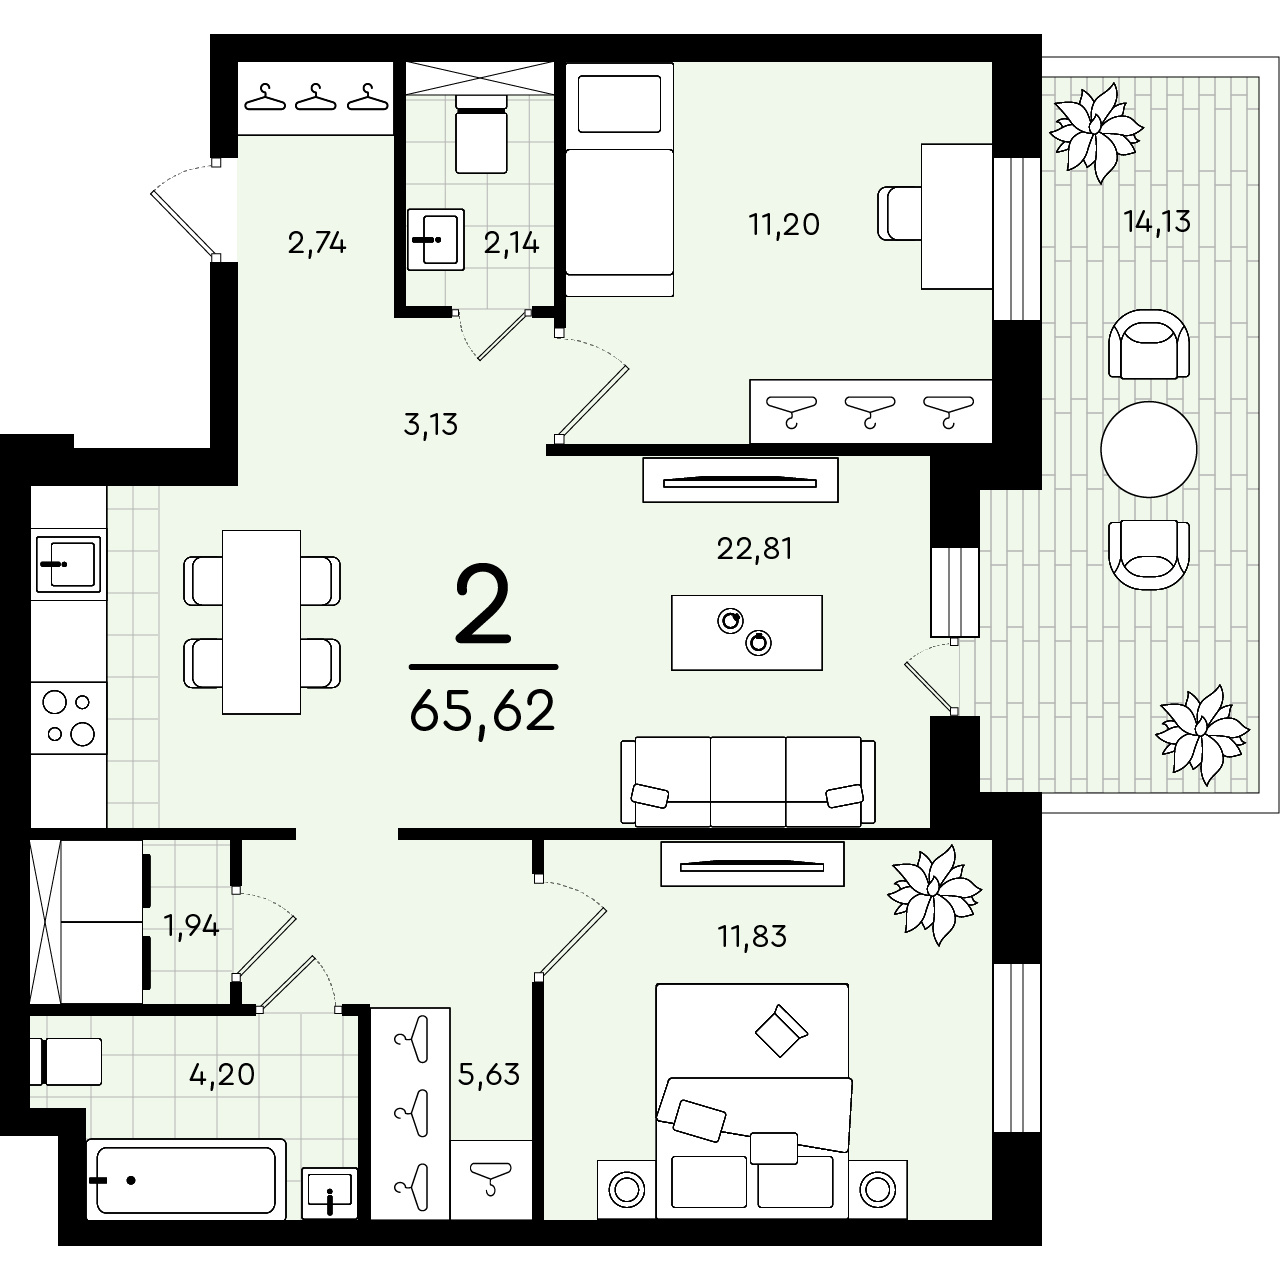 Двухкомнатная квартира <nobr class="_">65, 62 кв. м</nobr> — идеальное решение для дружной семьи. И здесь никогда не будет тесно!